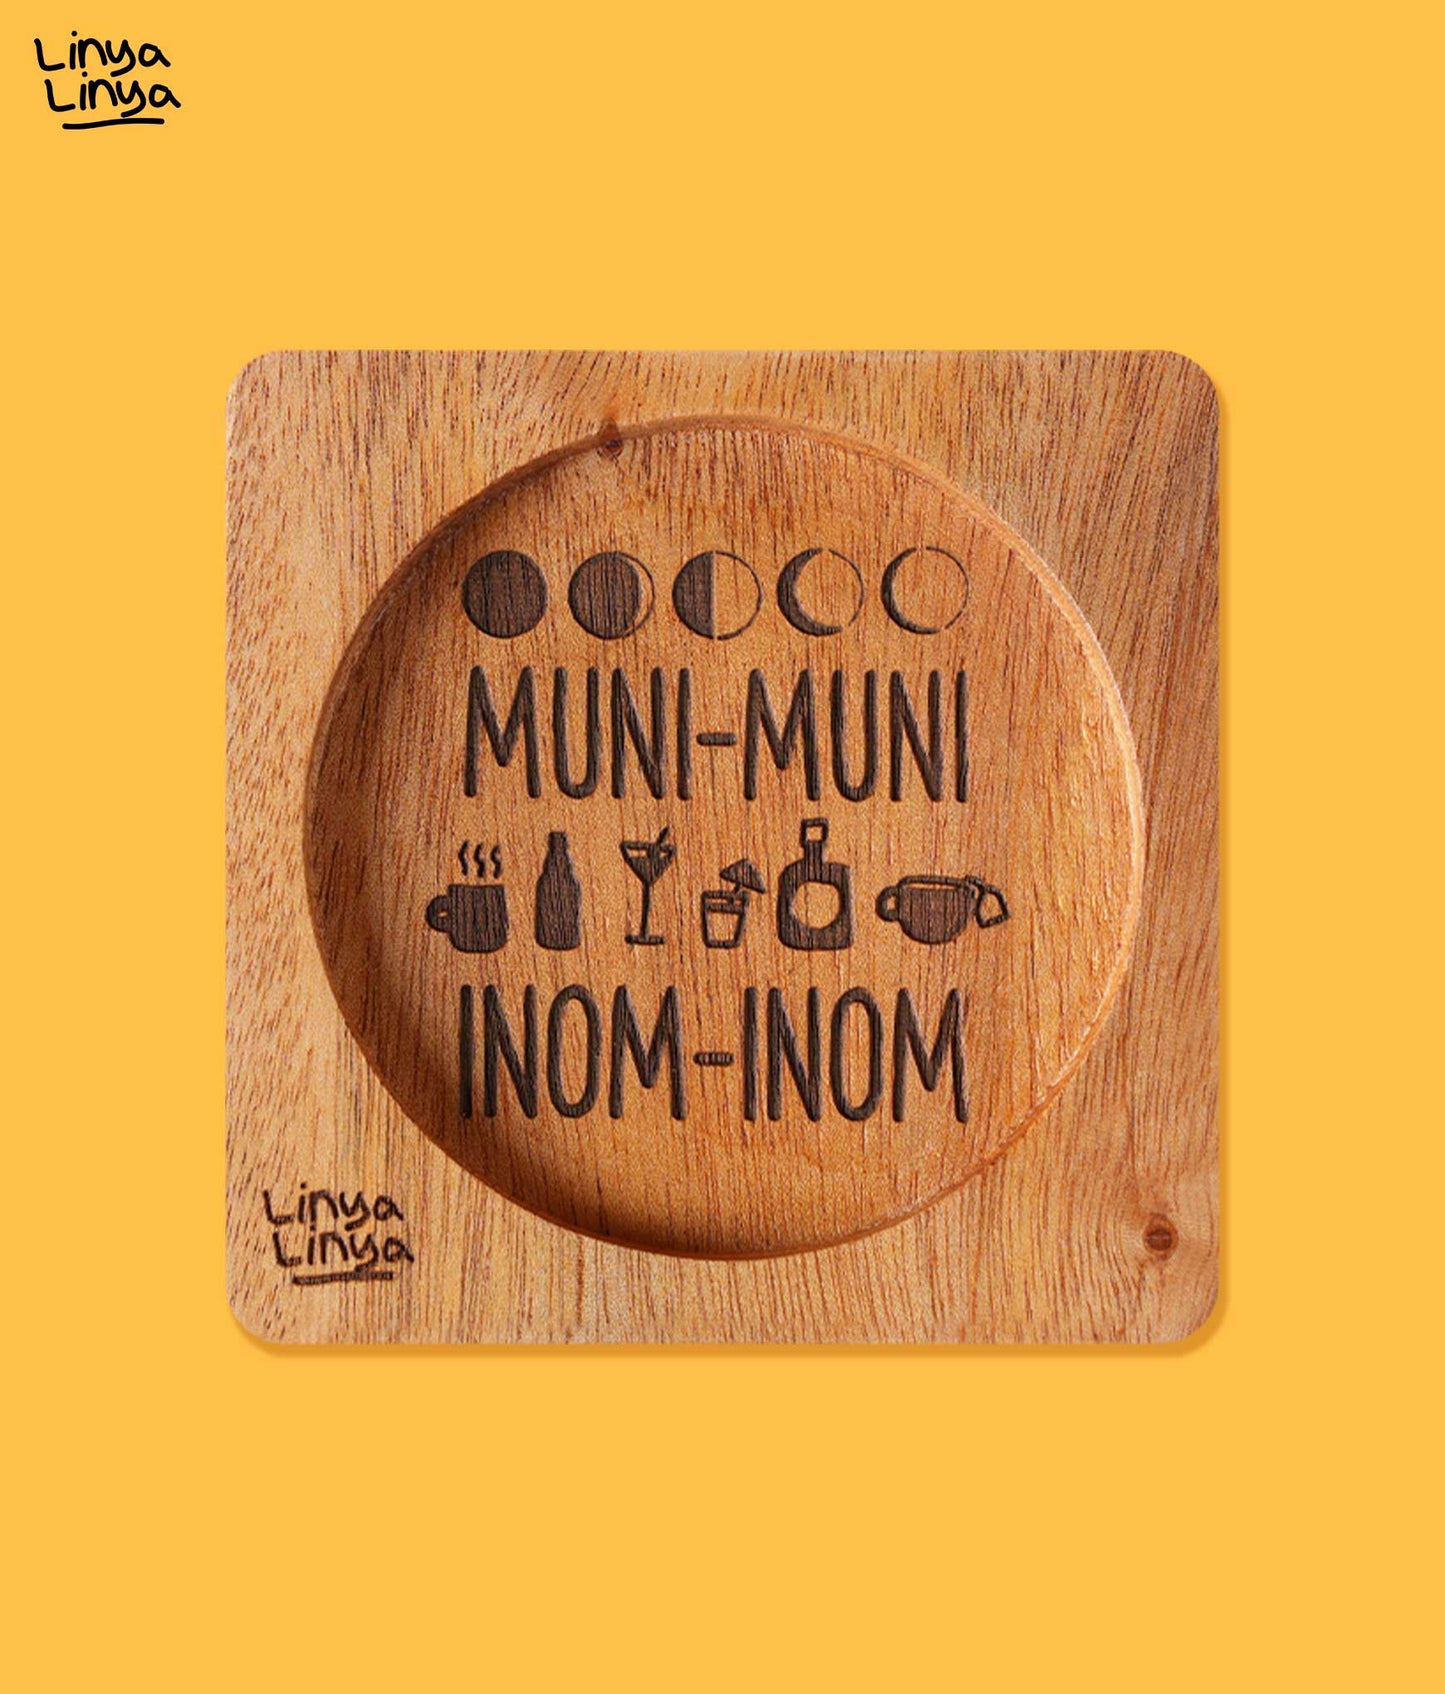 Coaster: Muni-Muni Inom-Inom